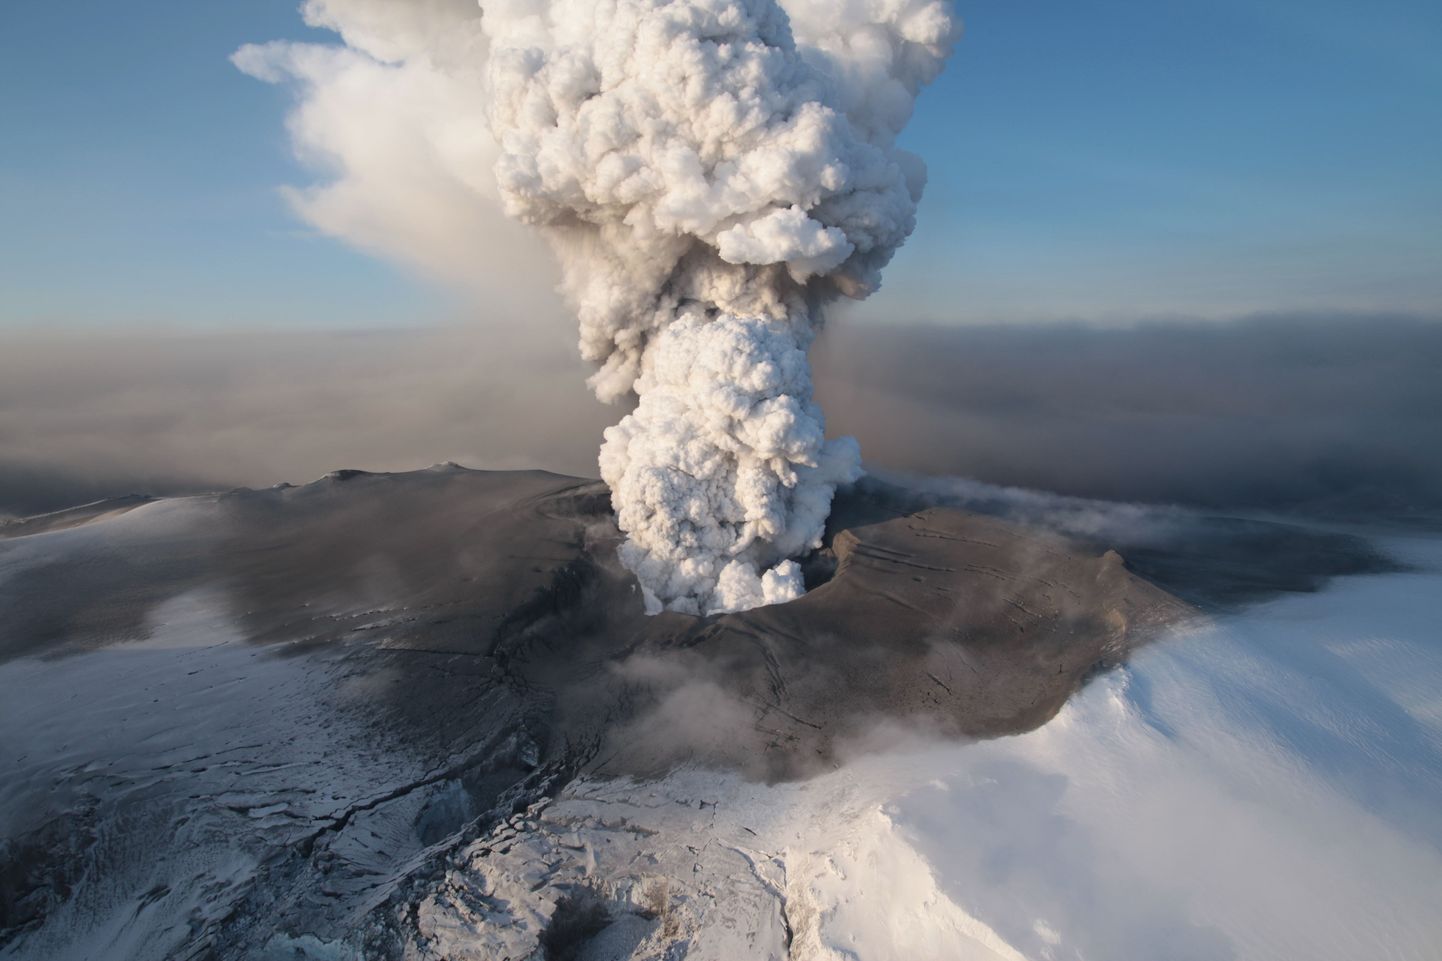 Täna tehtud õhufoto Eyjafjallajökulli liustiku tipus asuva vulkaani purskest.